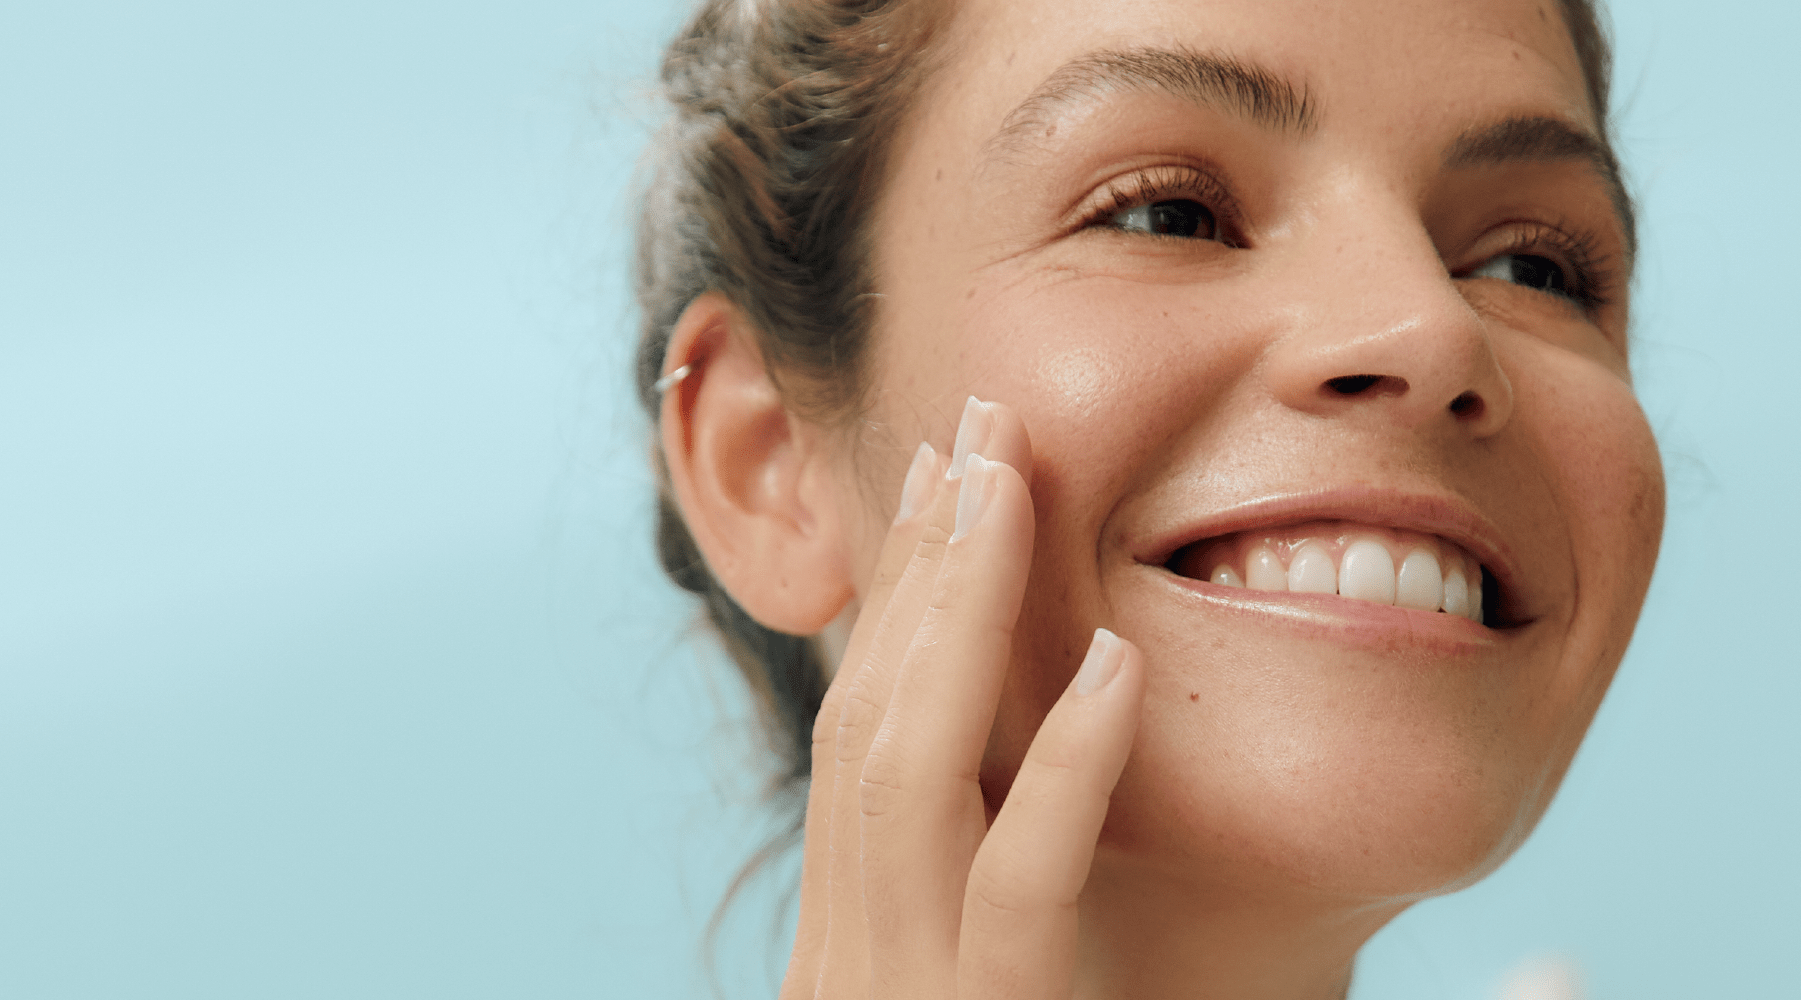 Doble limpieza facial: qué es y cómo realizarla